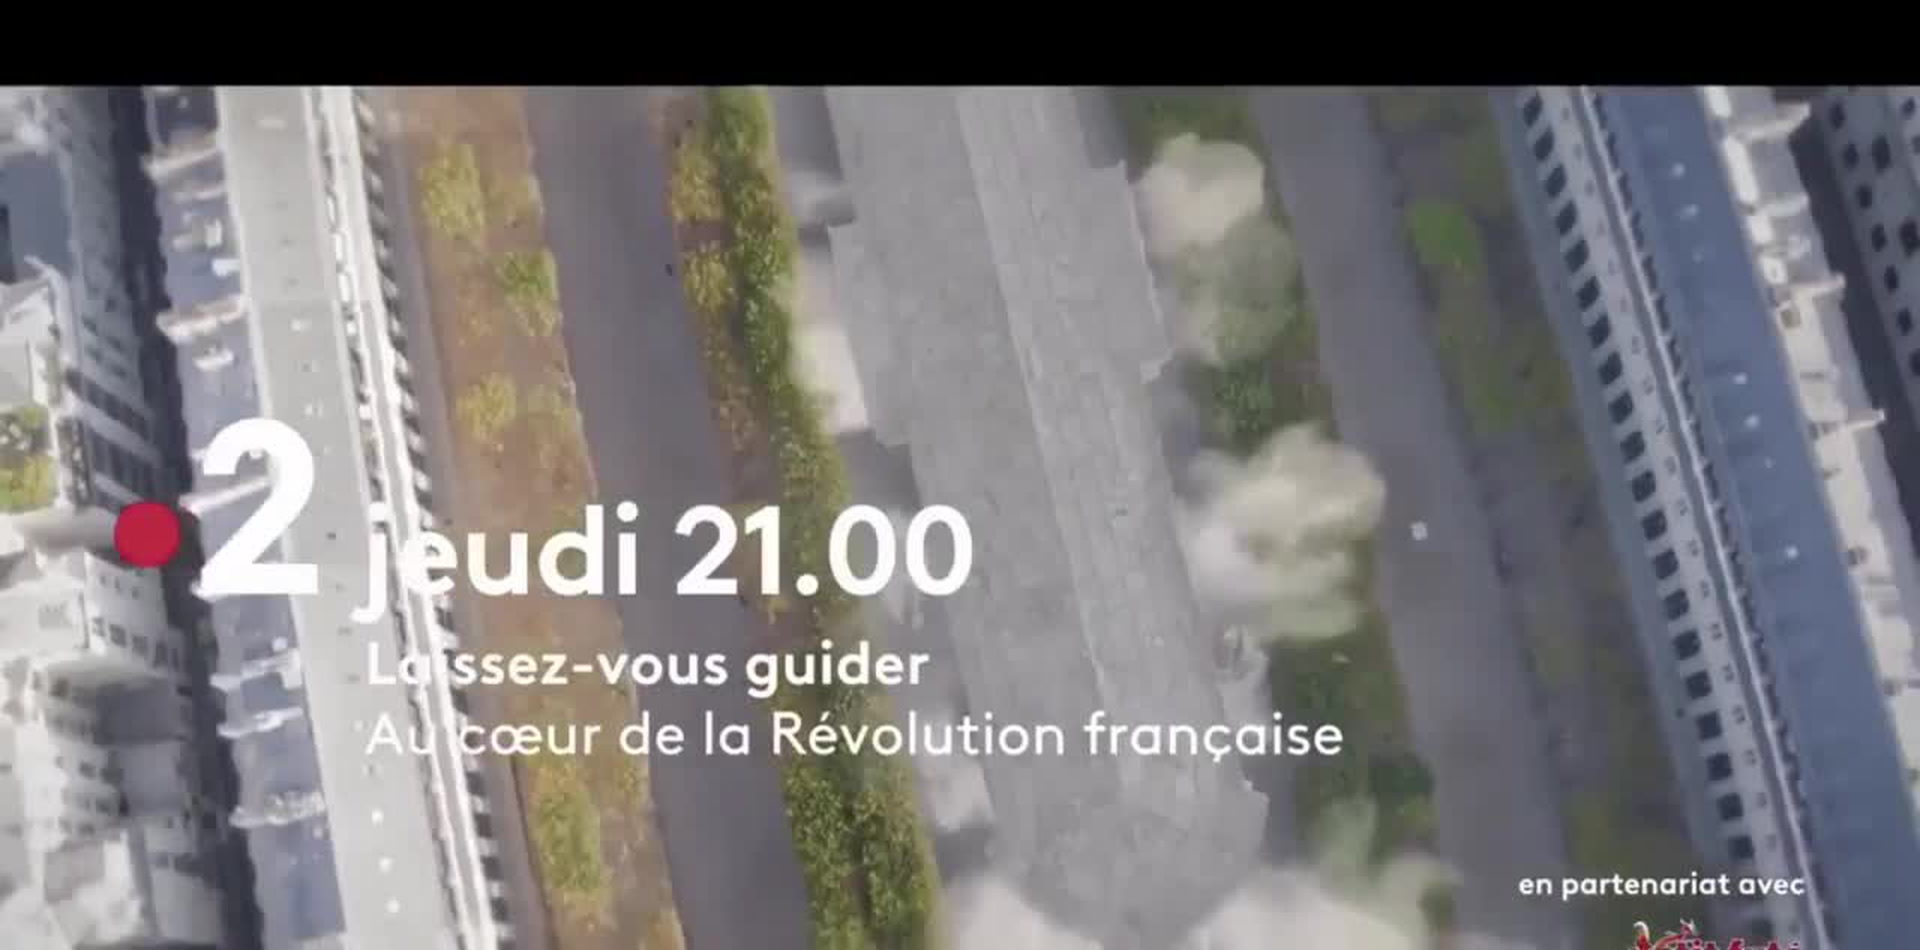 Laissez-vous guider : Au coeur de la Révolution française